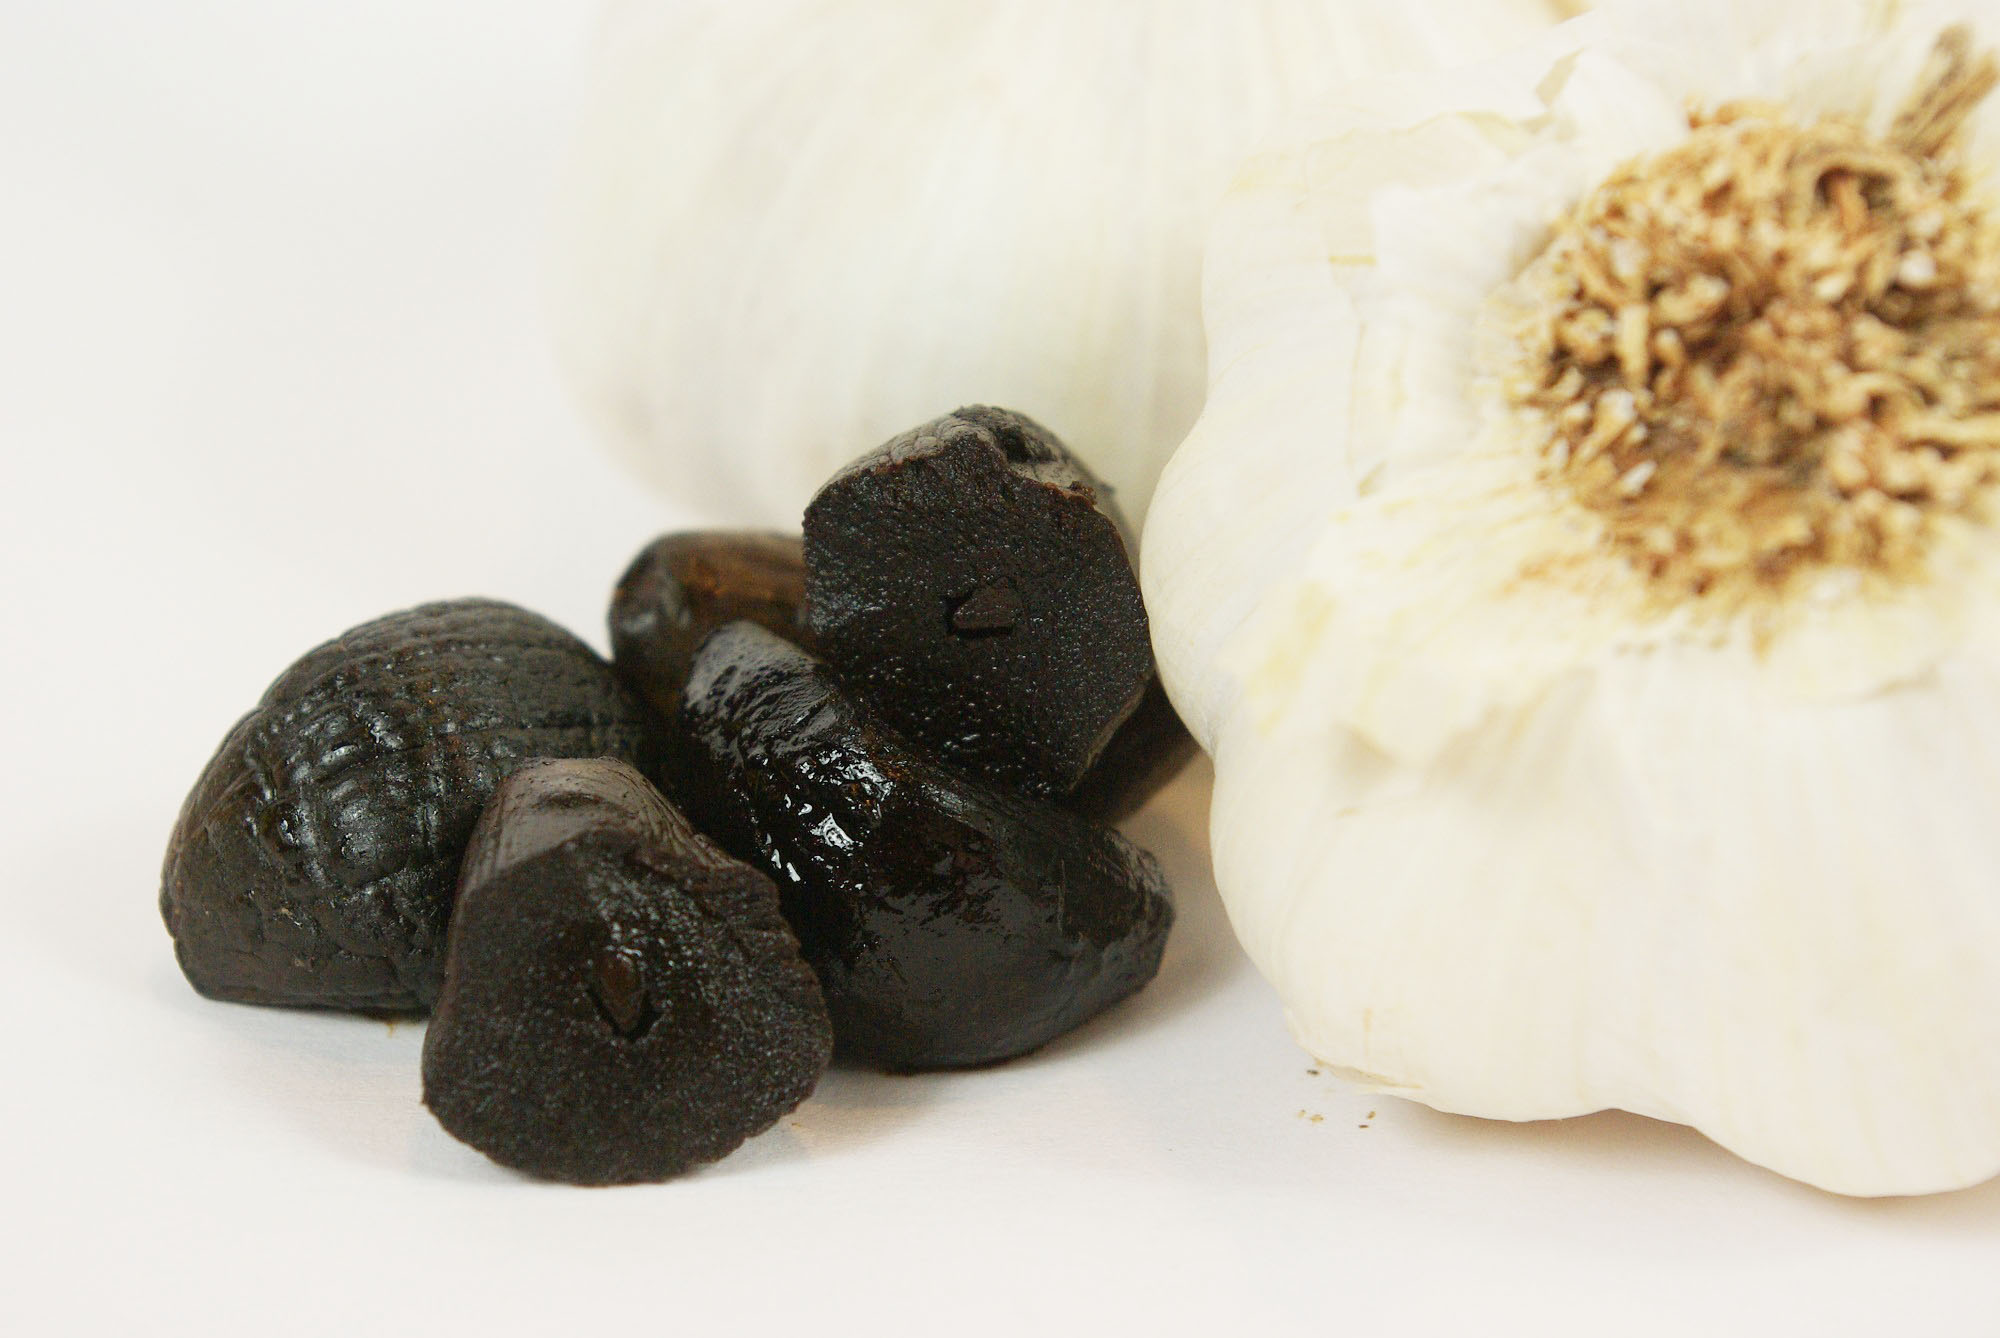 Schwarzer Knoblauch - Black garlic - fermentierter Knoblauch